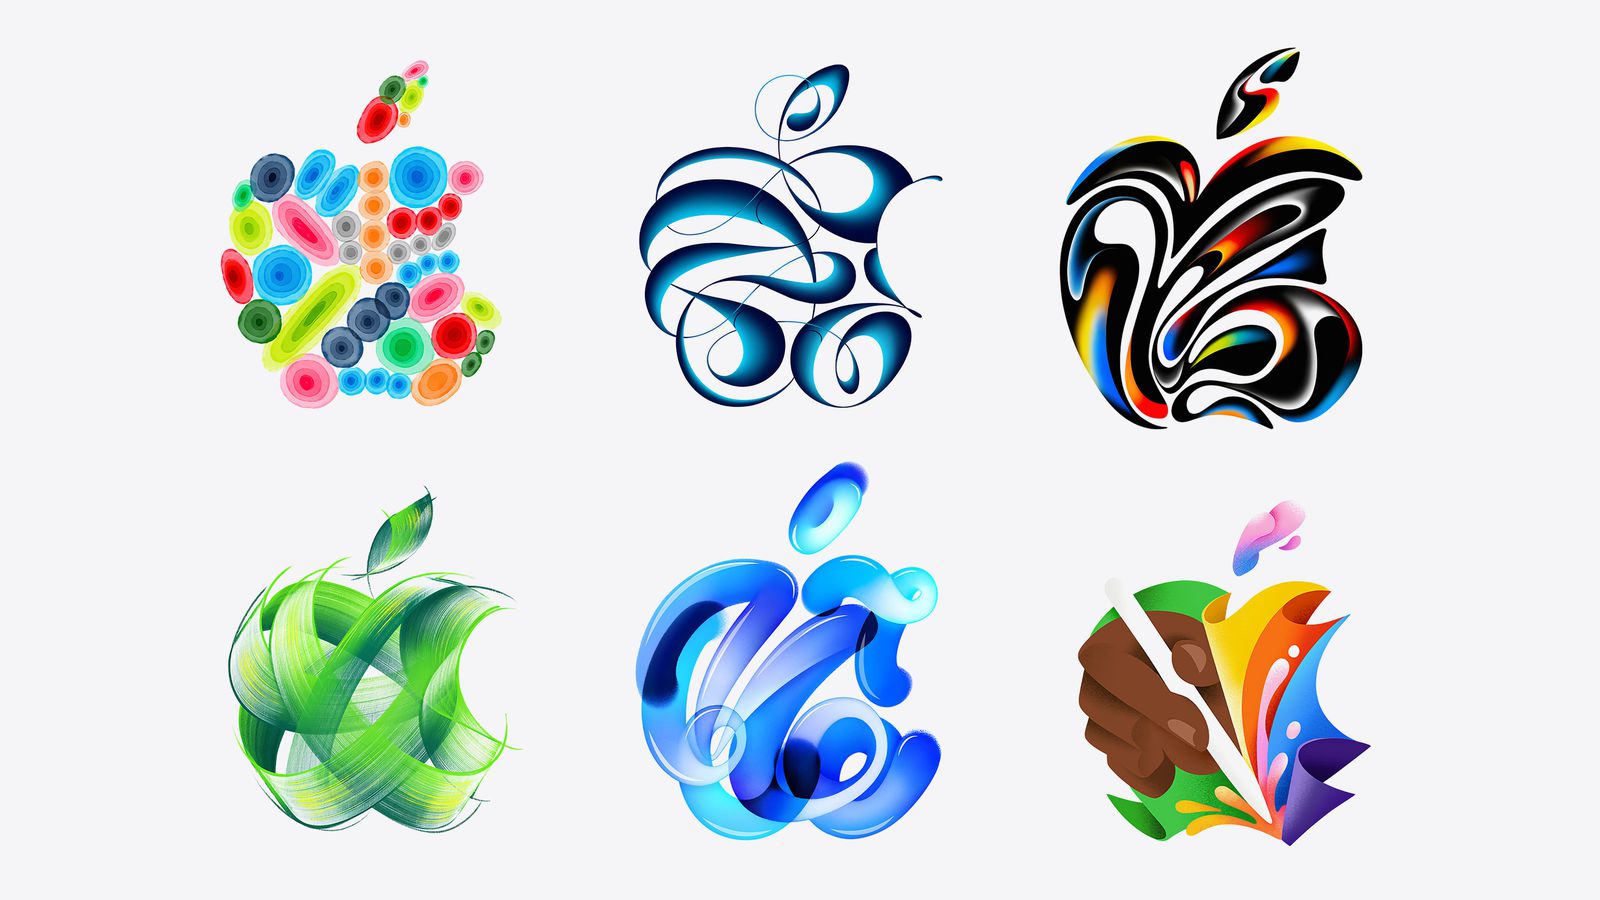 Van iPhoneIslam.com, zes abstracte ontwerpen in felle kleuren en vloeiende vormen, waaronder een verzameling bollen, lintachtige vormen en bladmotieven beïnvloed door randnieuws.